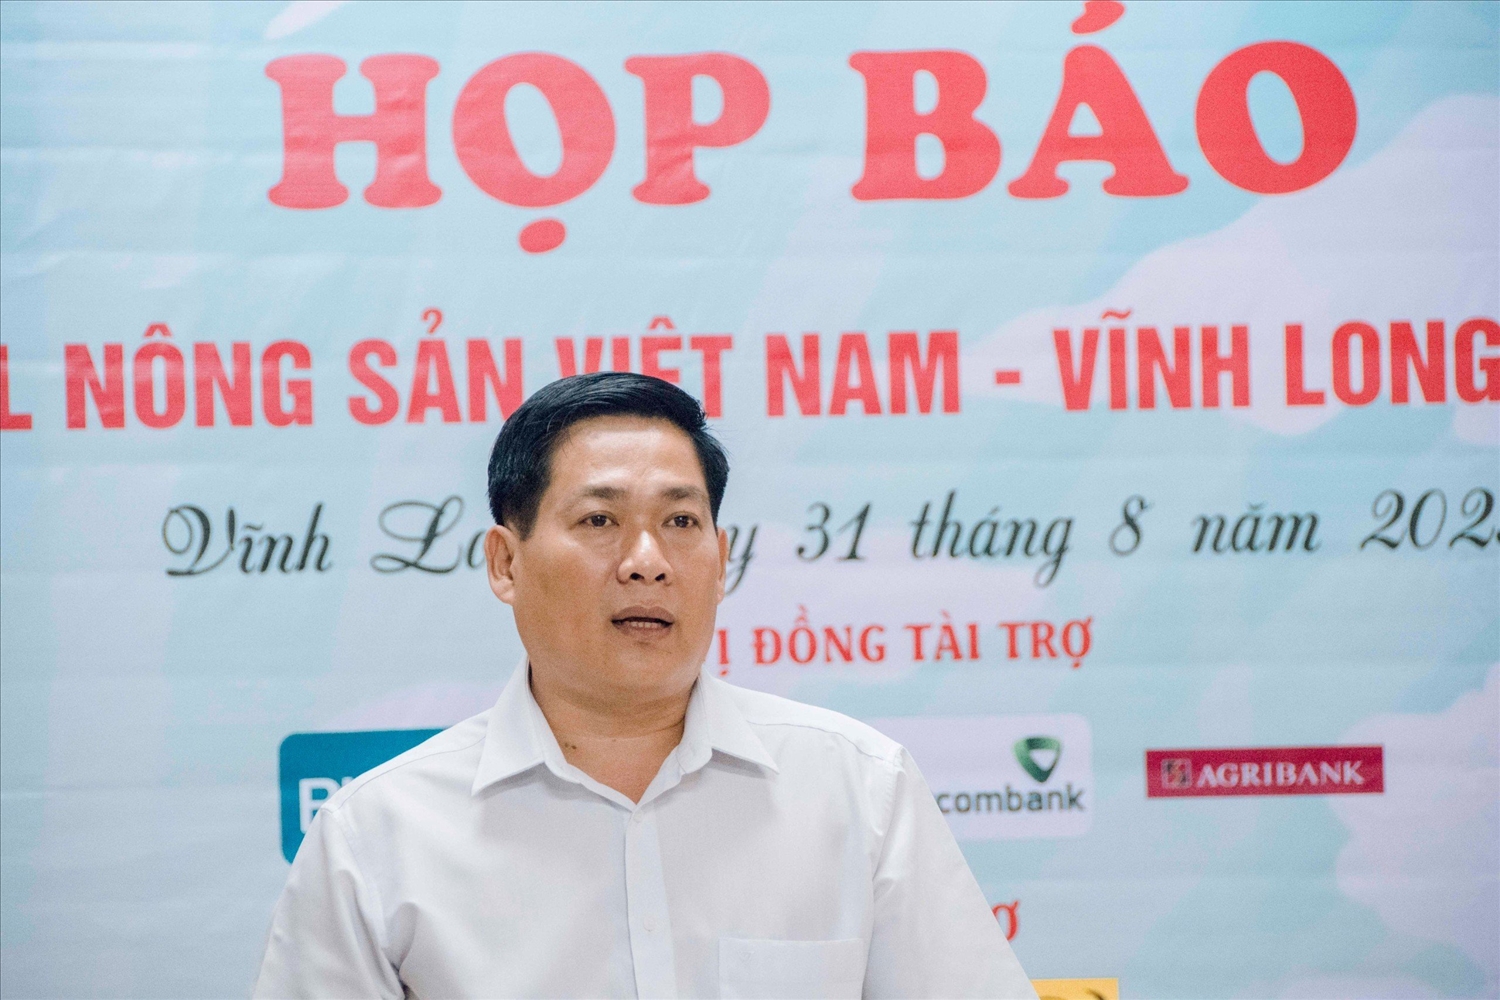 Ông Nguyễn Trung Kiên, Phó Giám đốc Sở Công thương tỉnh Vĩnh Long phát biểu tại buổi hợp báo